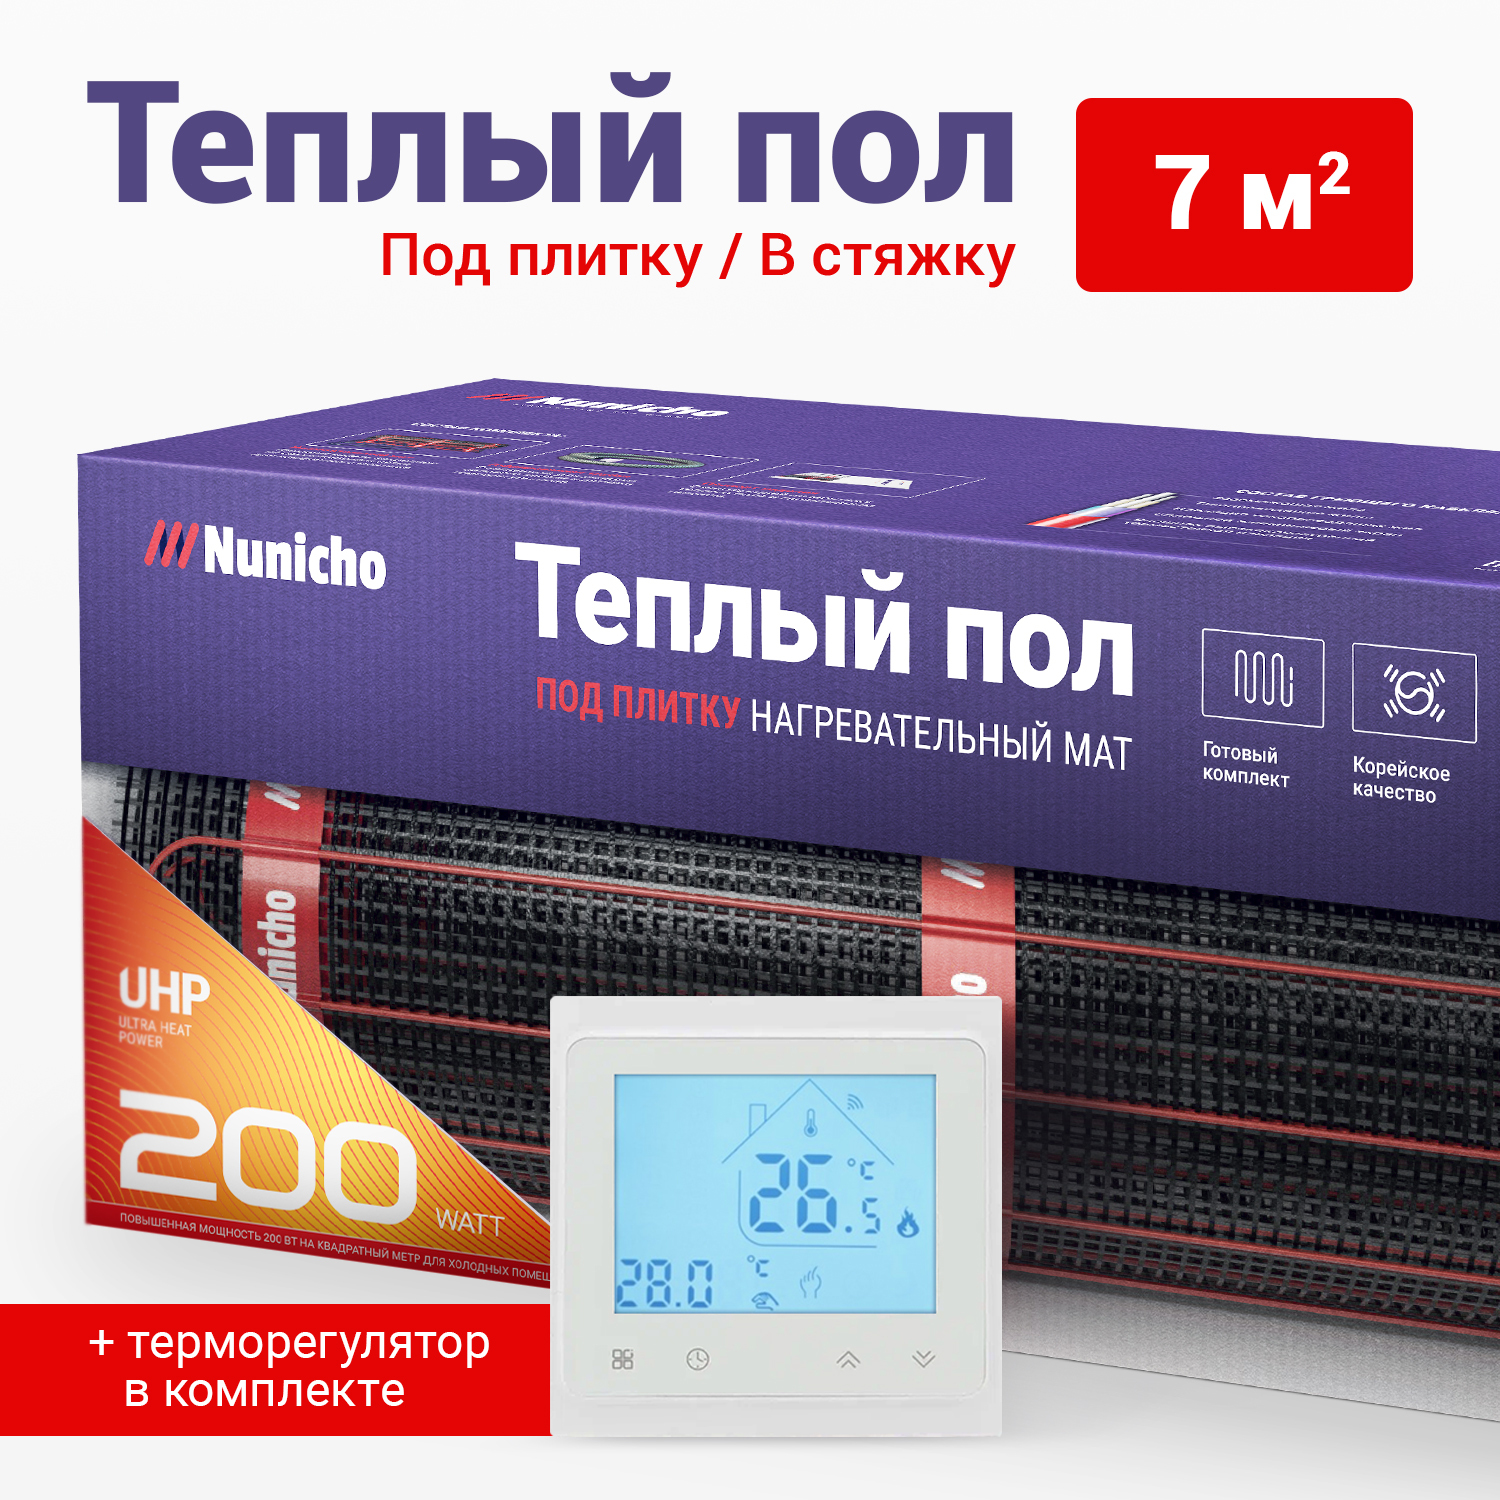 фото Теплый пол под плитку в стяжку nunicho 7 м2, 200 вт/м2 со smart-терморегулятором белым